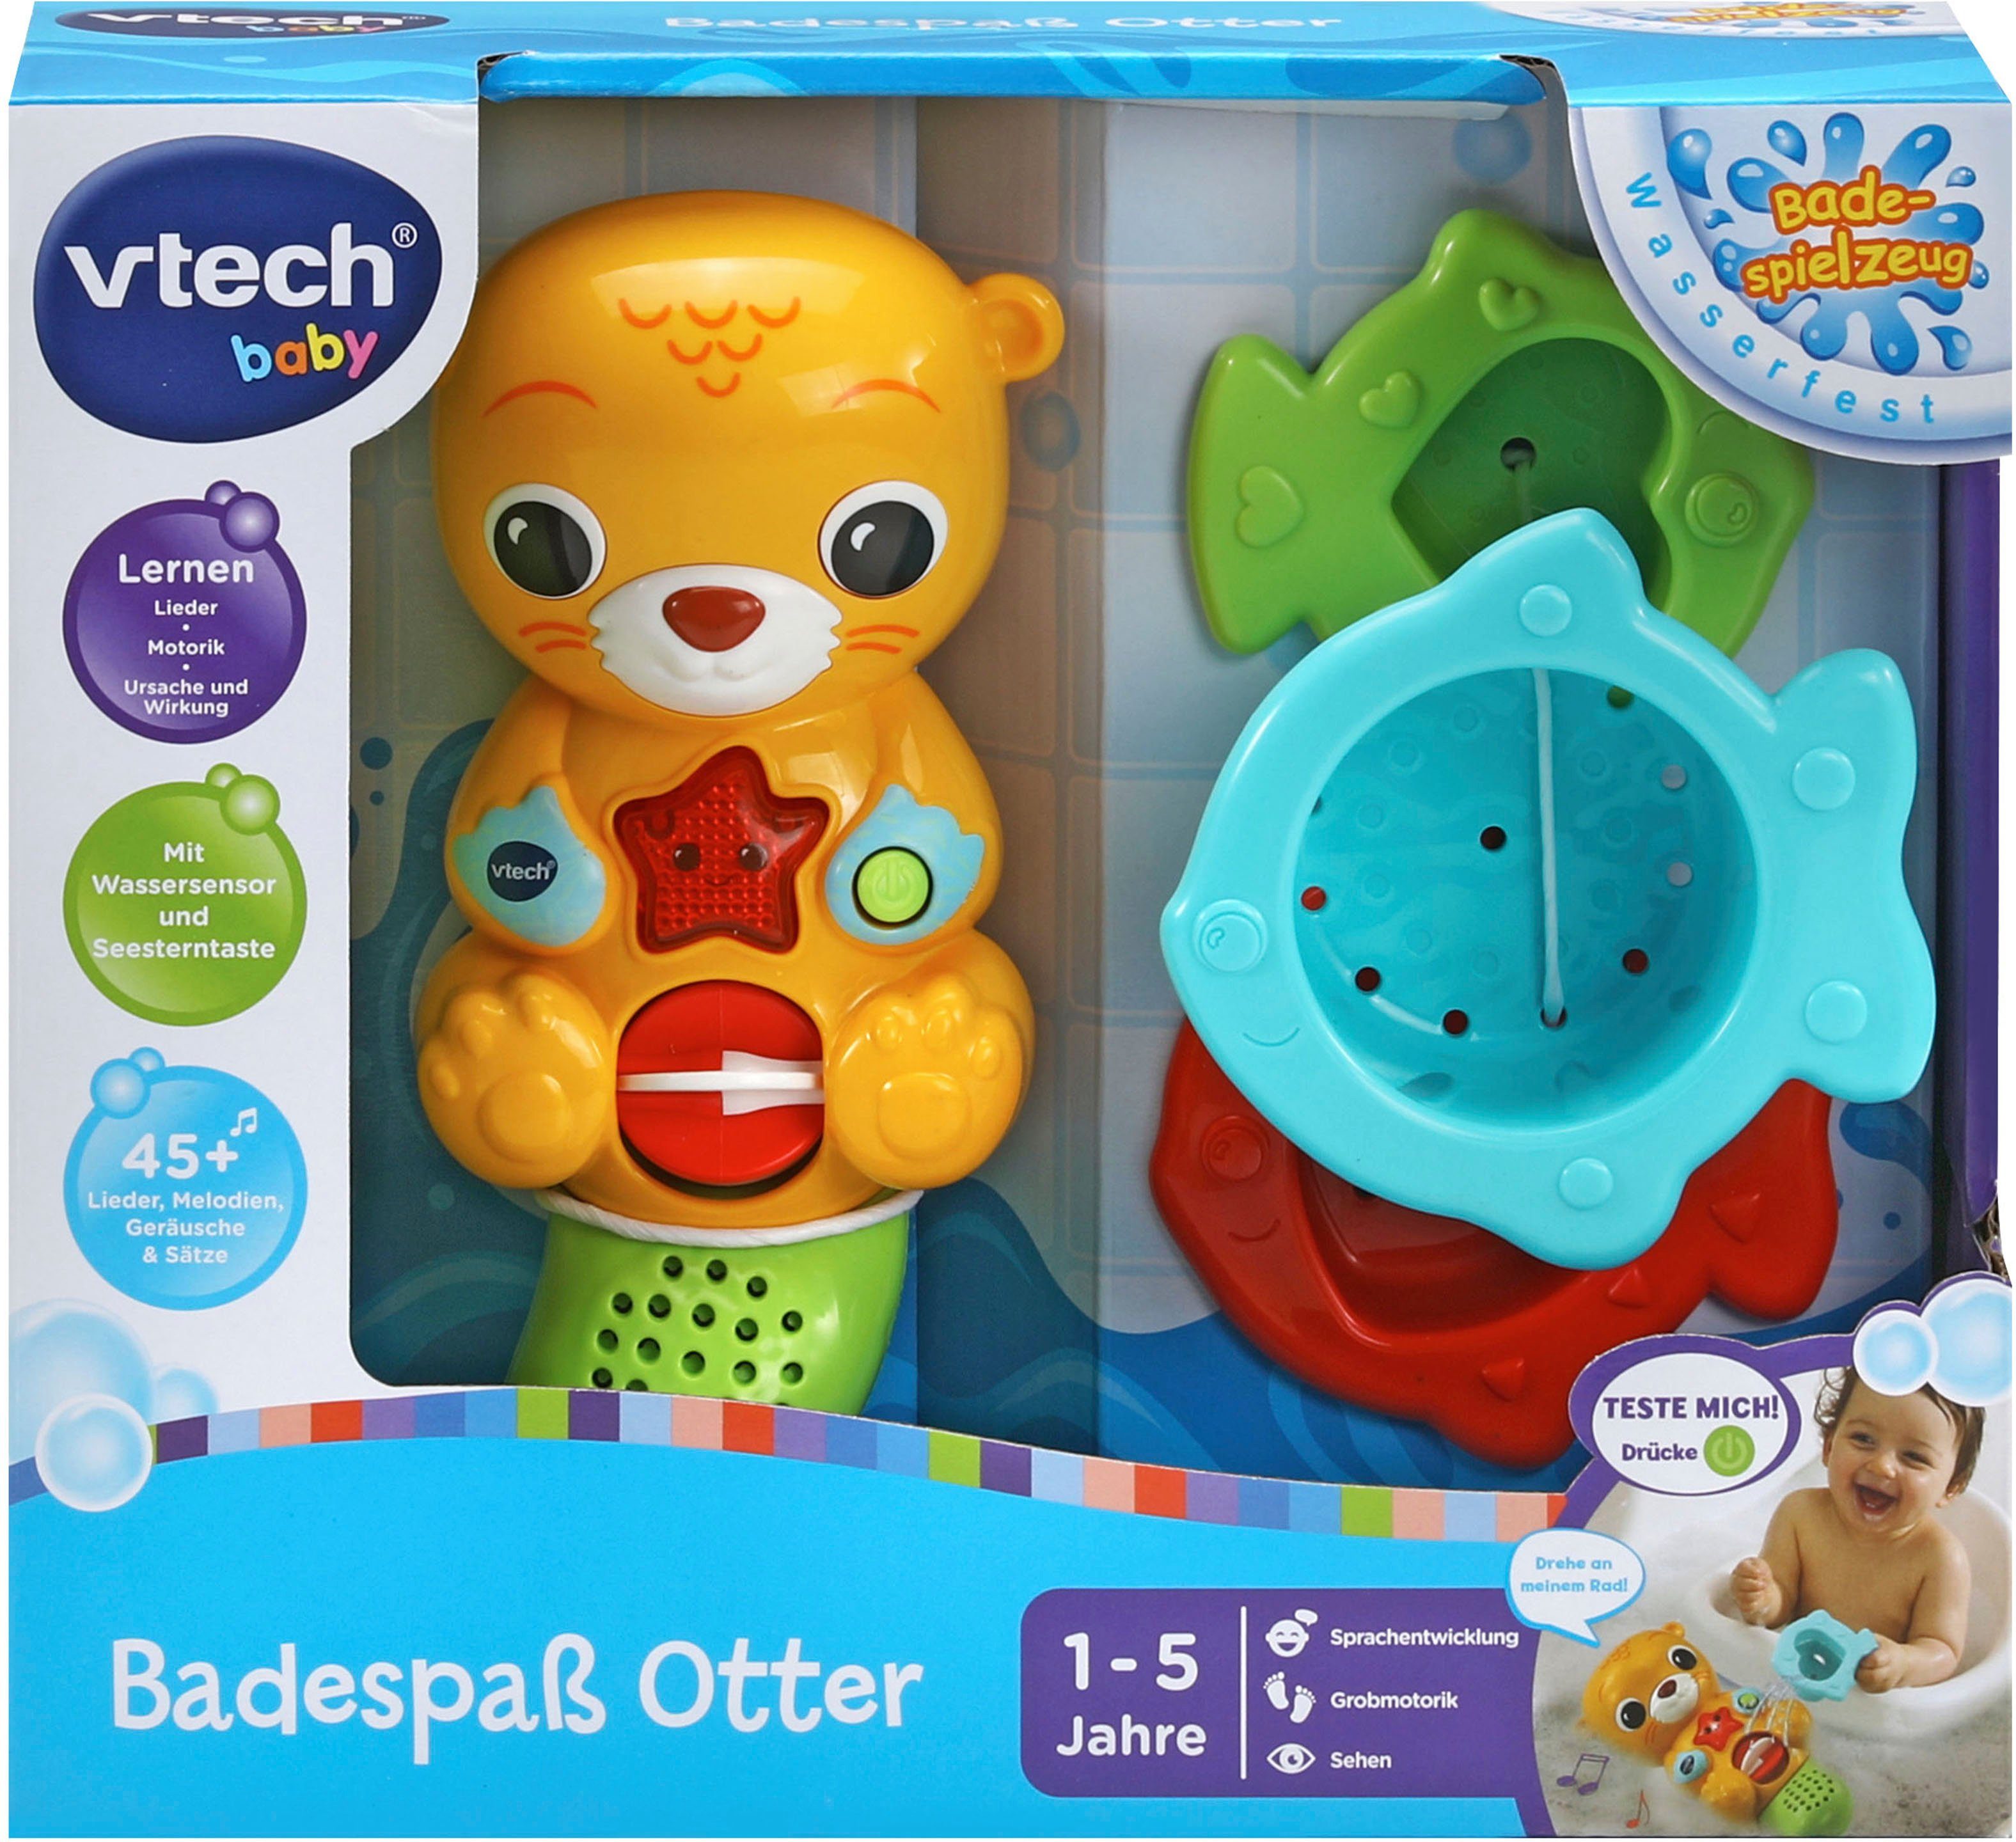 Vtech® Badespielzeug Vtech Baby, Licht mit Badespaß und Sound Otter